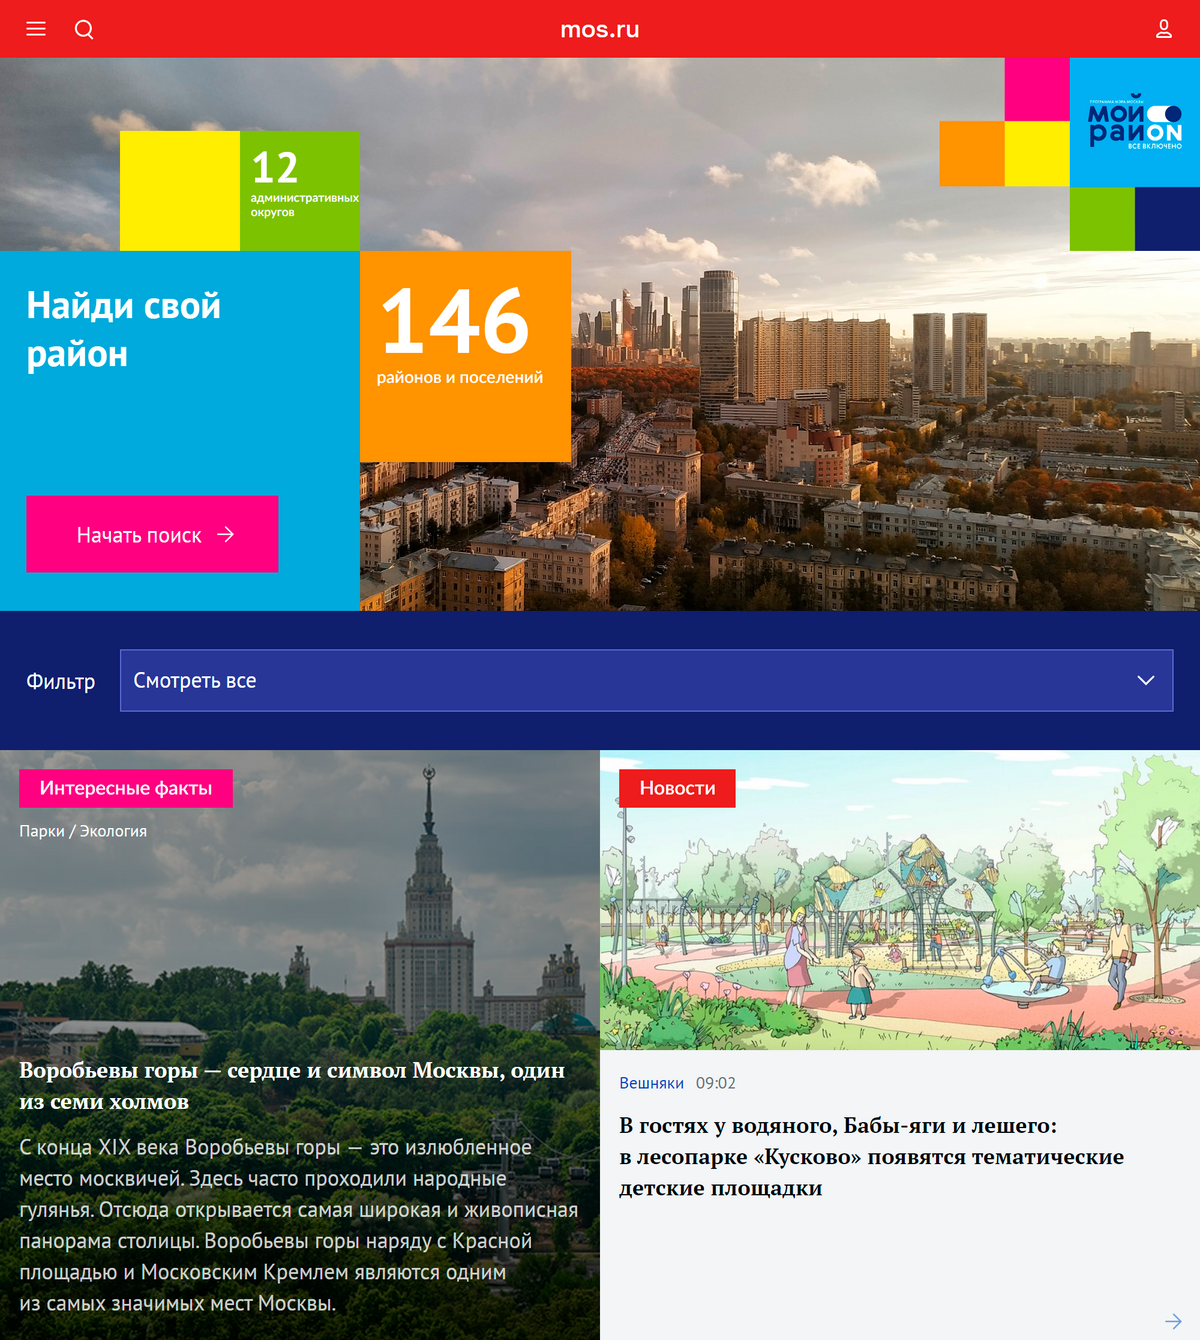 Если вы продаете квартиру в Москве, информацию о социальной, экономической и культурной жизни района для&nbsp;объявления можно посмотреть на mos.ru